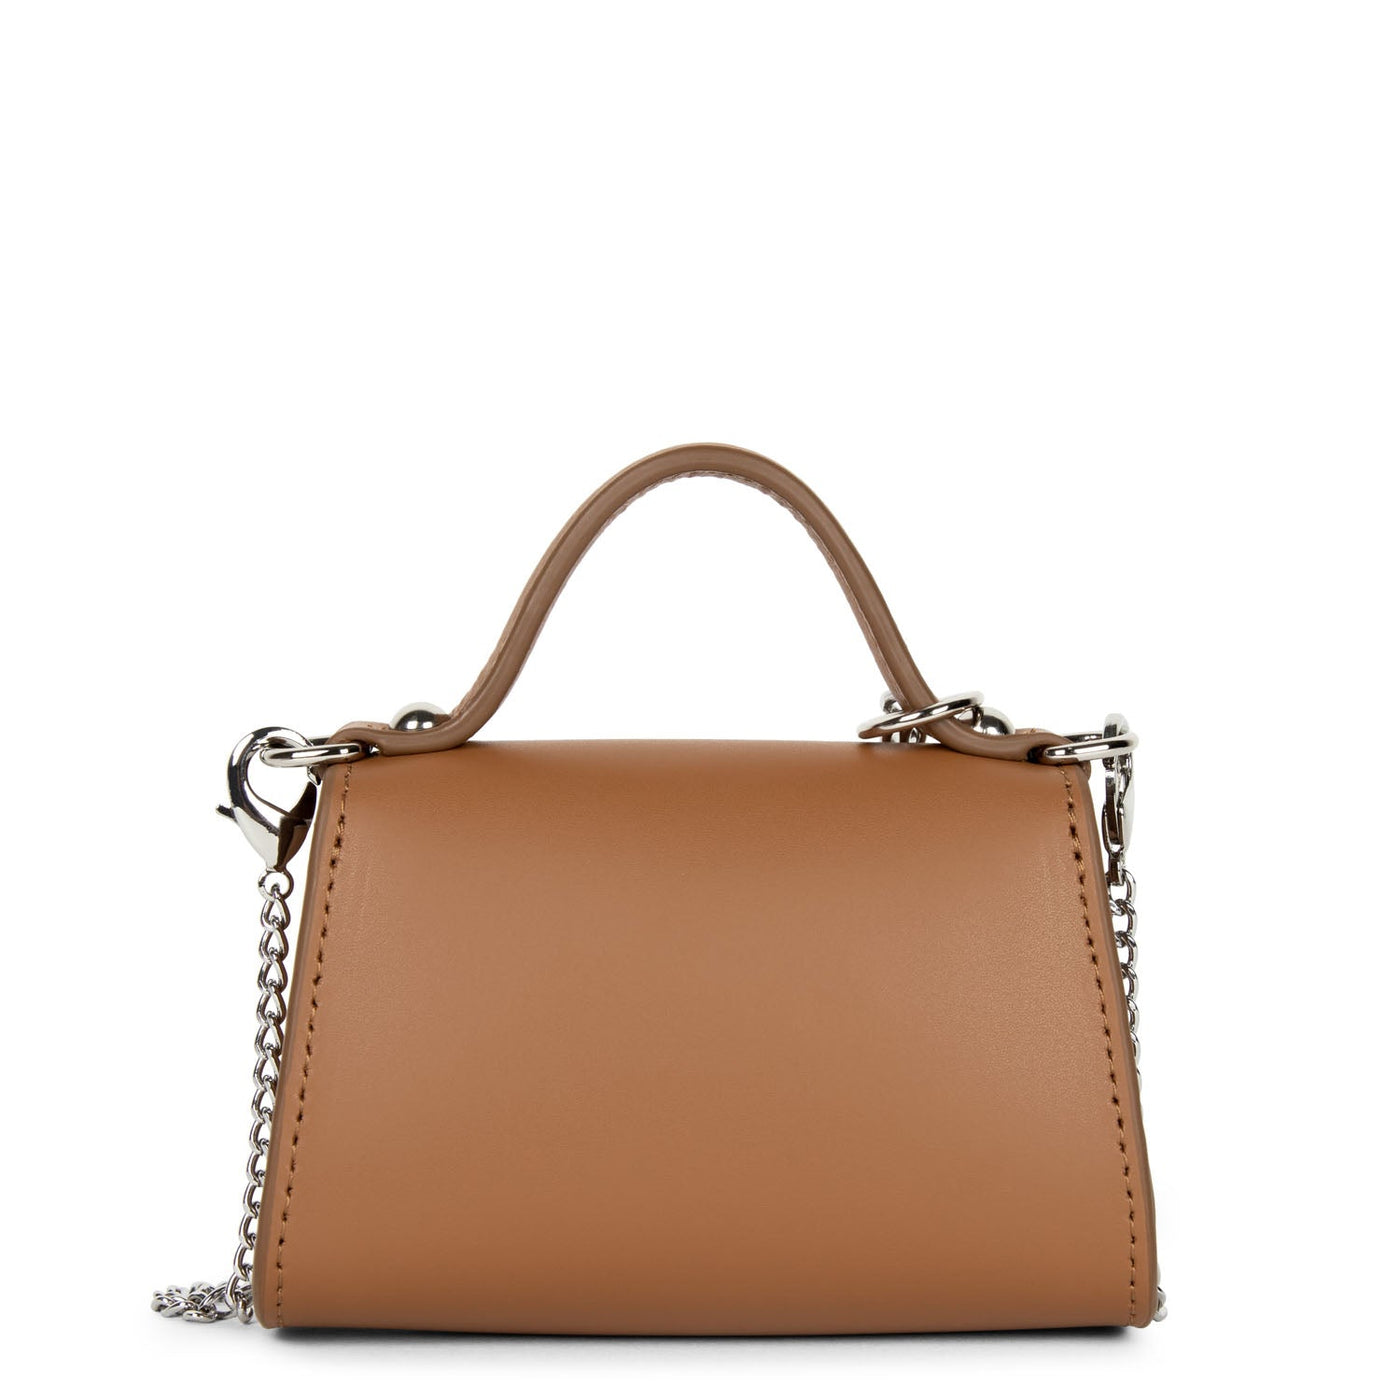 mini coin purse - suave even #couleur_noisette